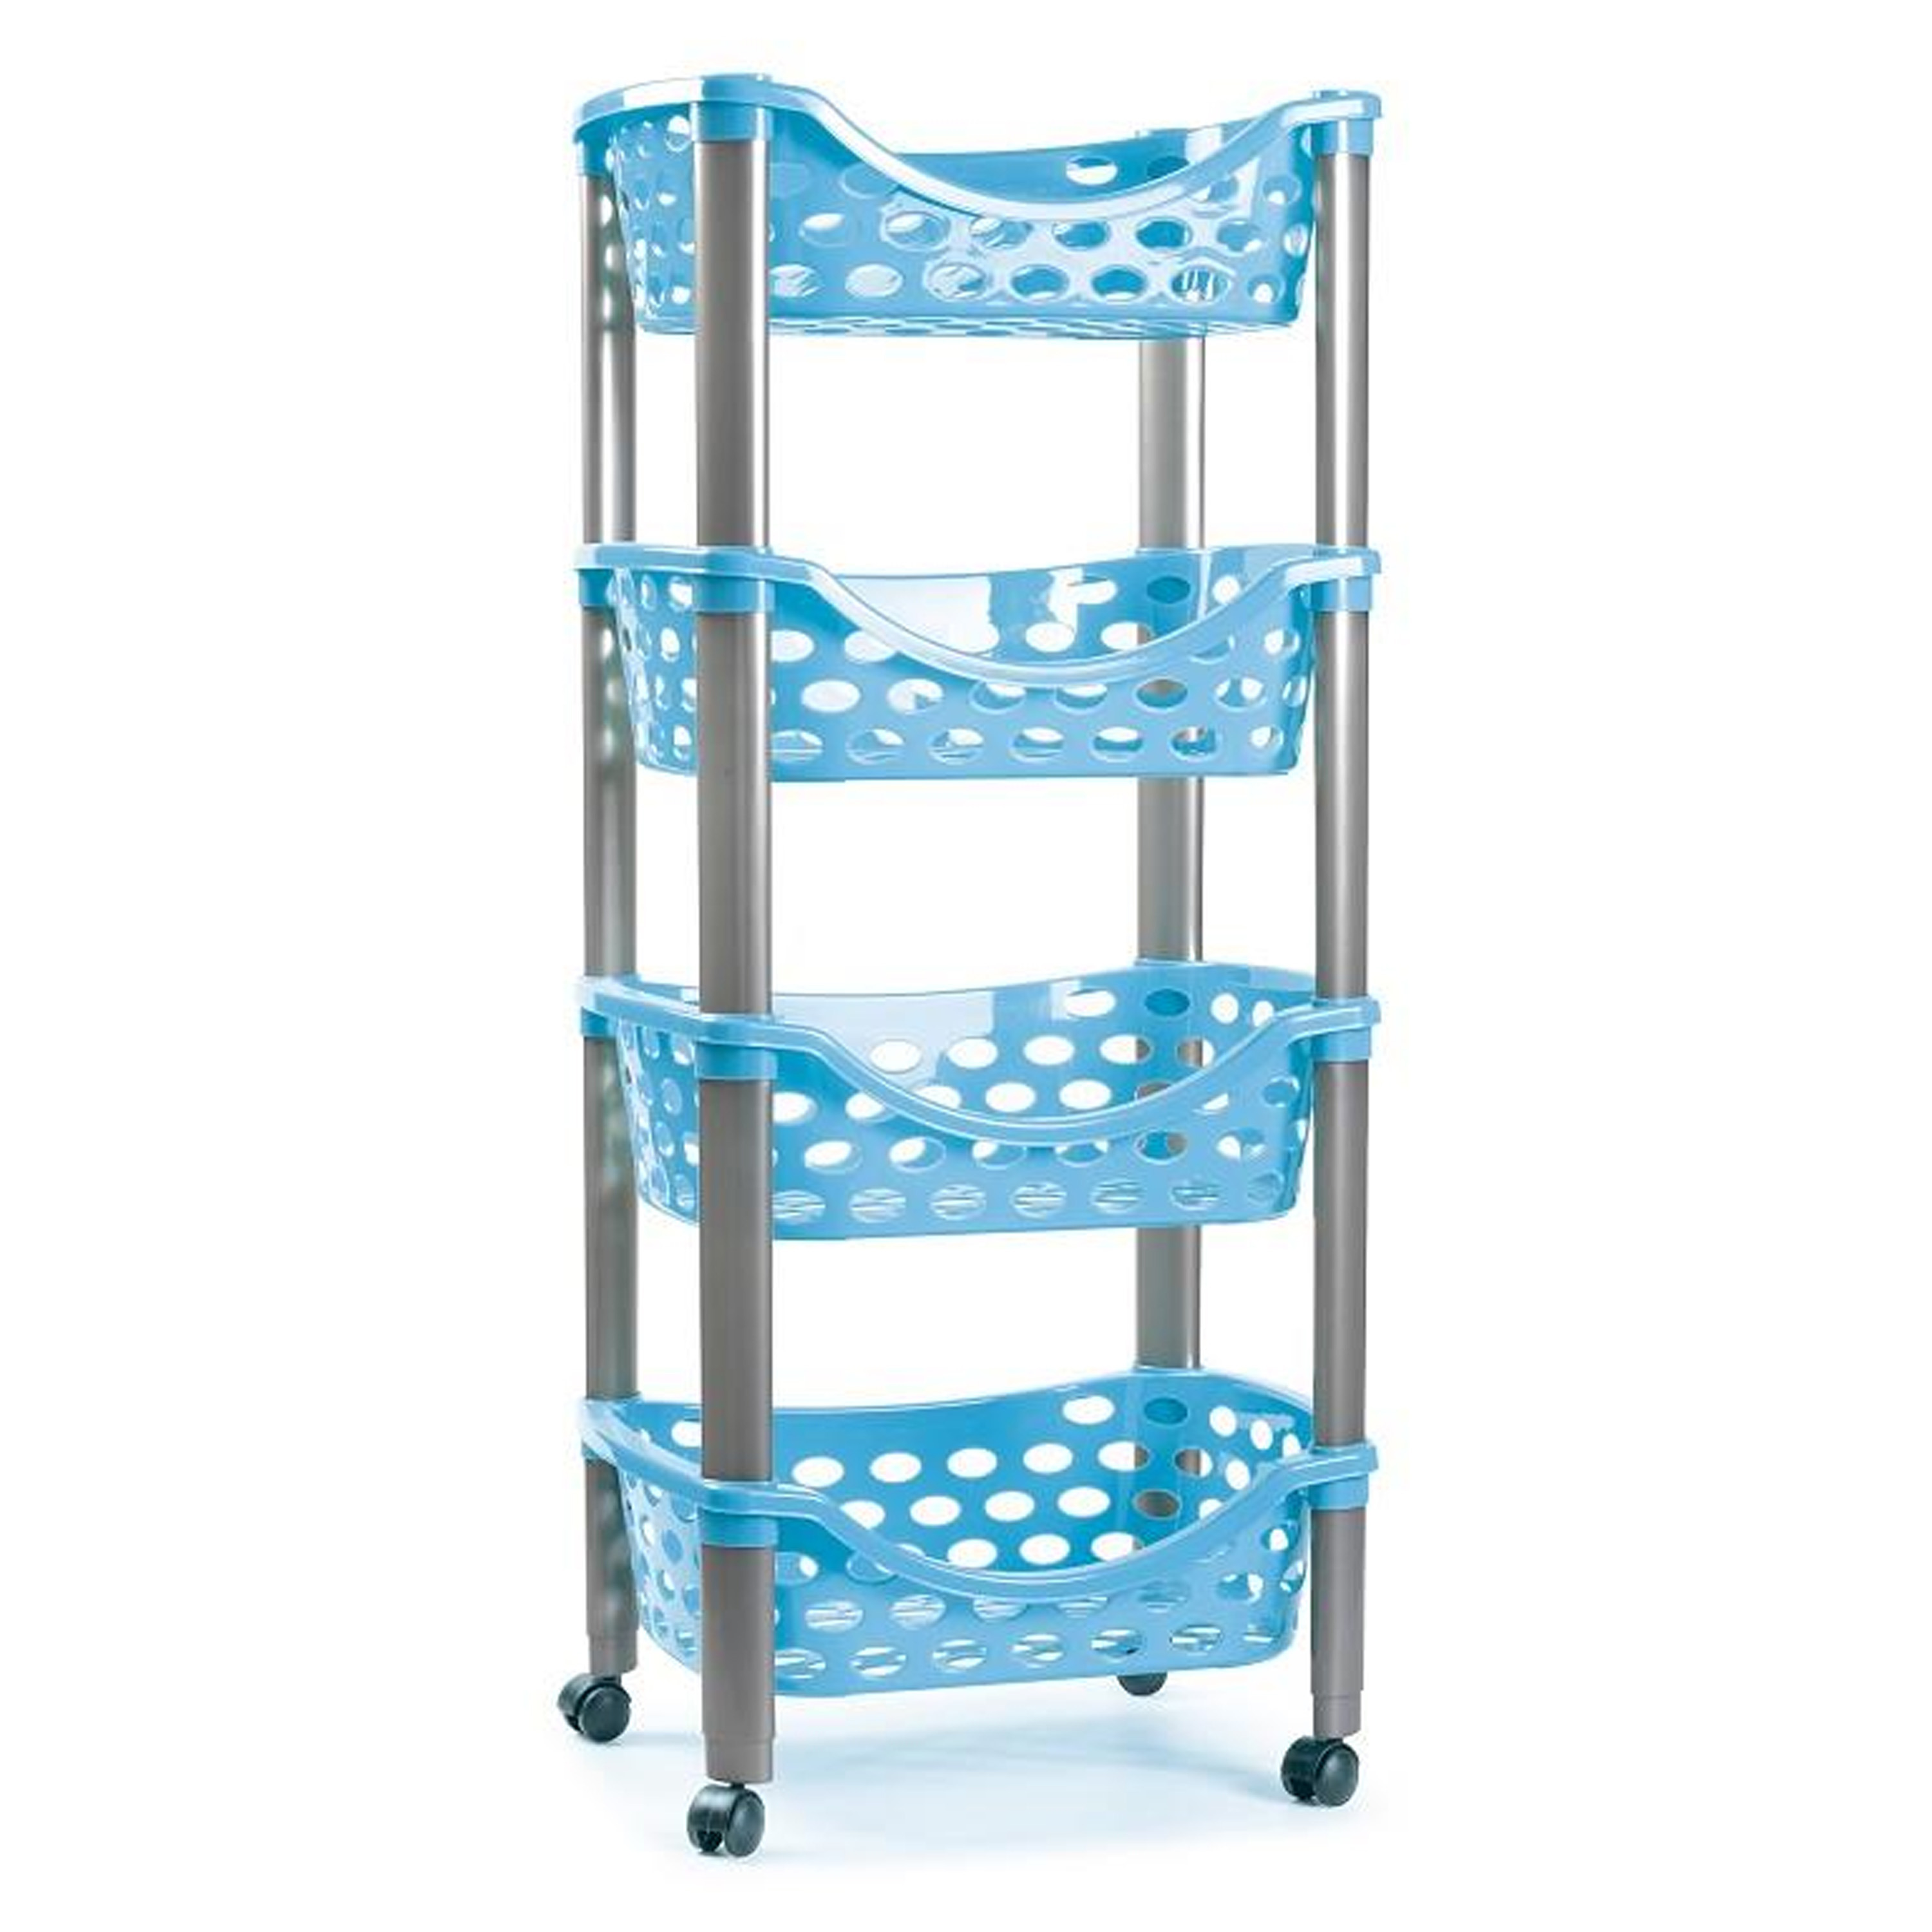 Keukentrolley-roltafel 4 laags kunststof blauw 40 x 88 cm